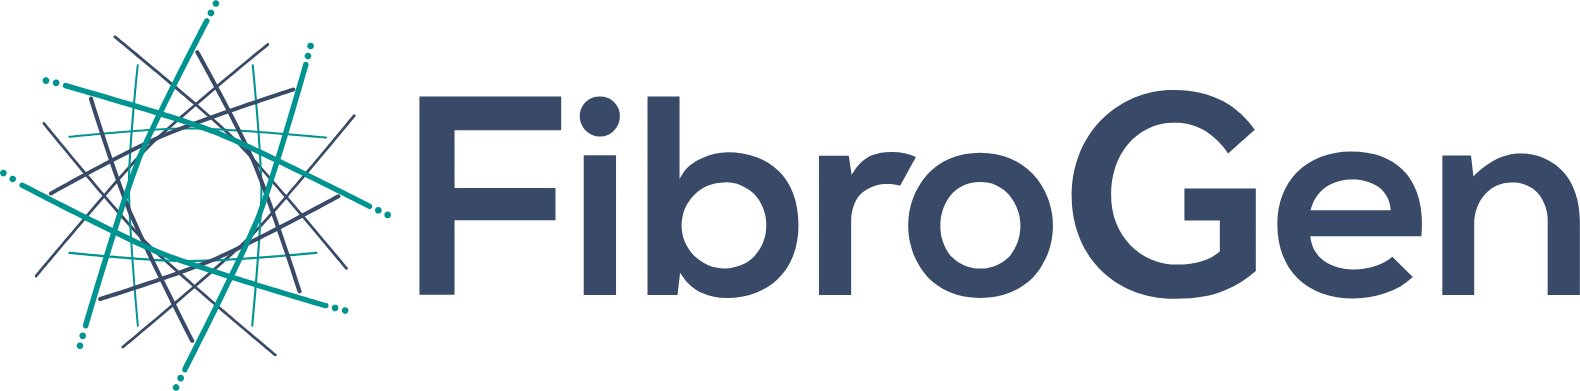 FibroGen logo large (transparent PNG)